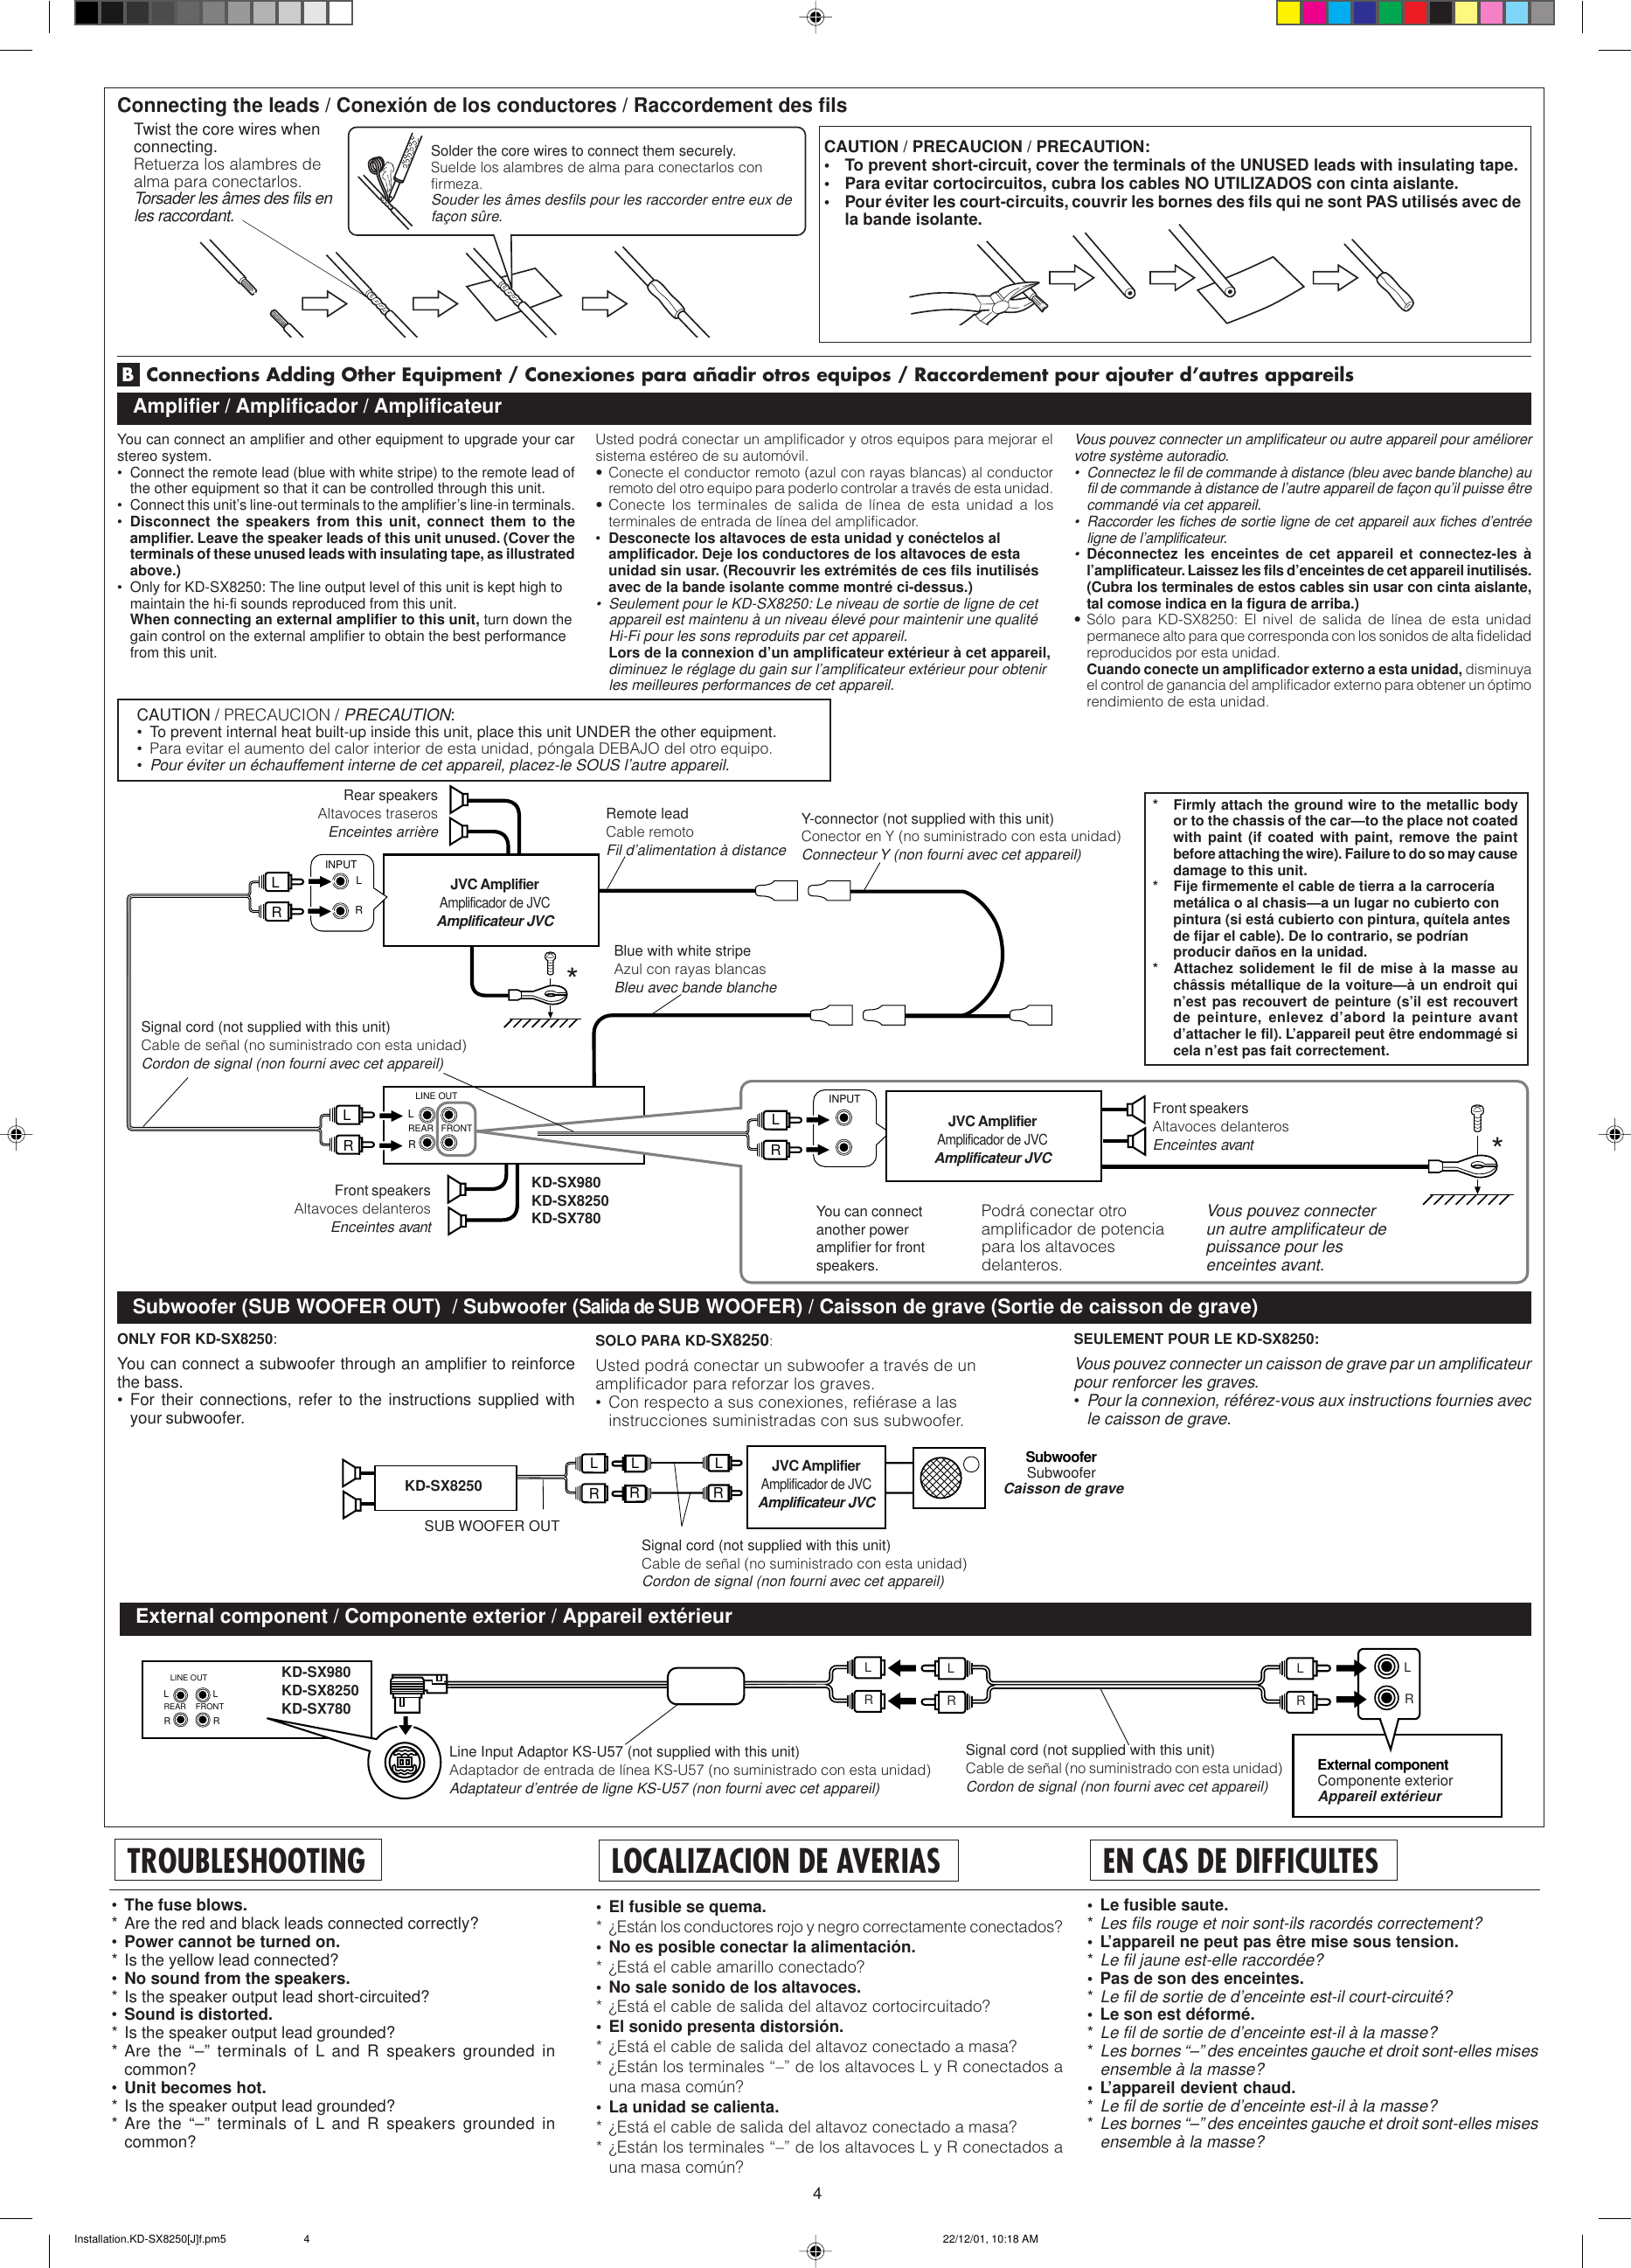 Page 4 of 4 - JVC KD-SX980 KD-SX980/KD-SX8250/KD-SX780 User Manual GET0071-002A